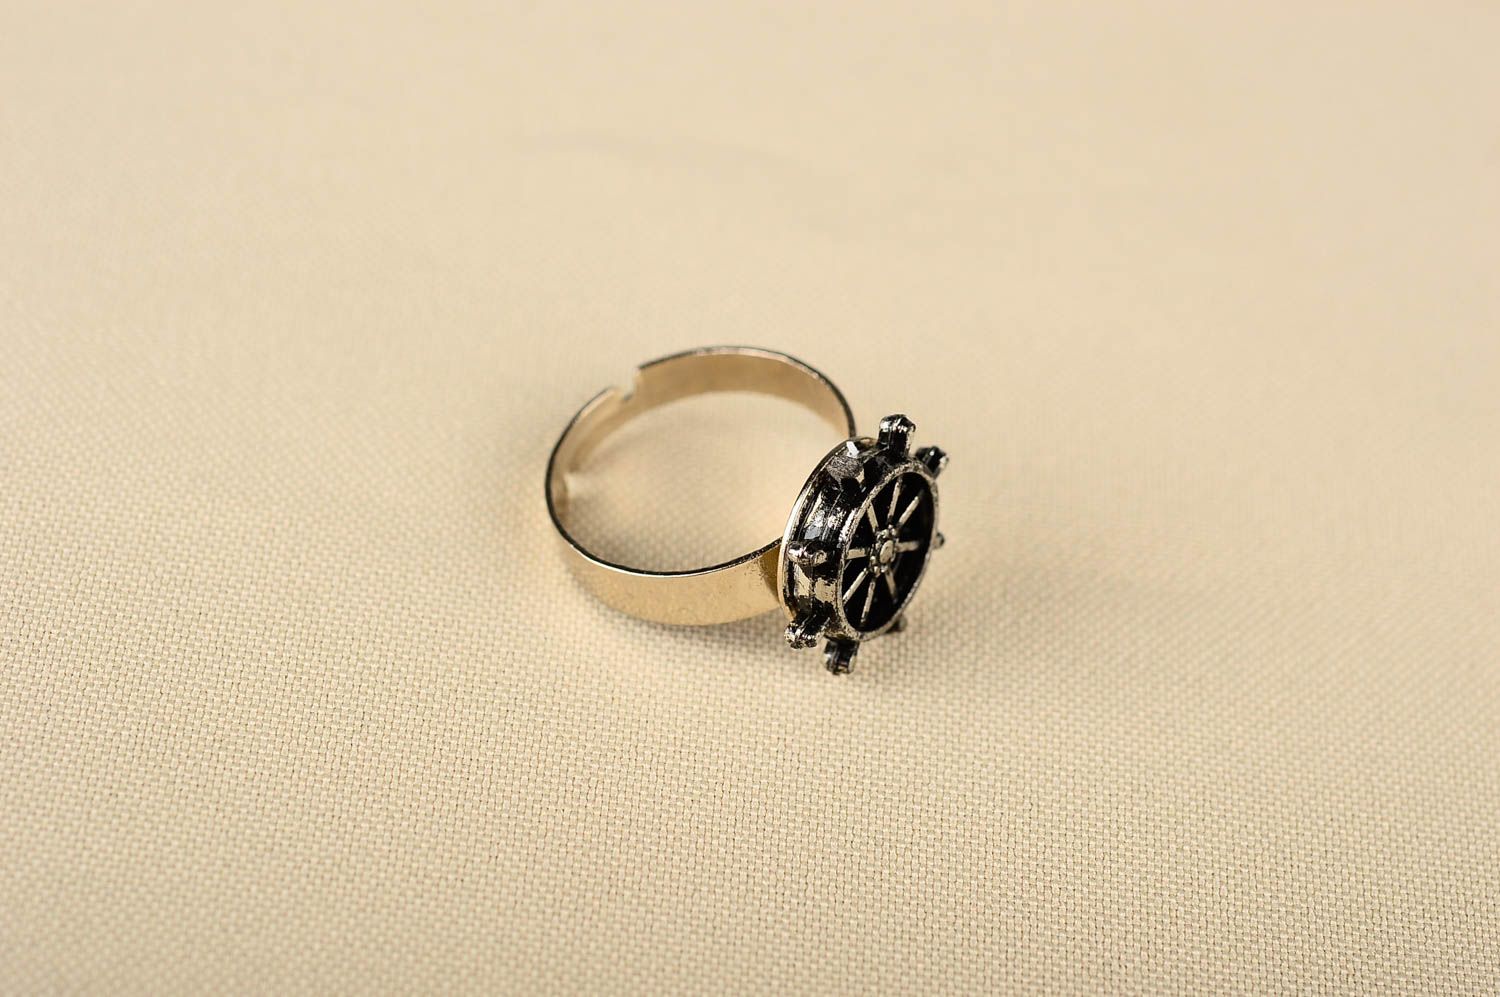 Кольцо ручной работы кольцо из металла с морским штурвалом модное кольцо фото 1